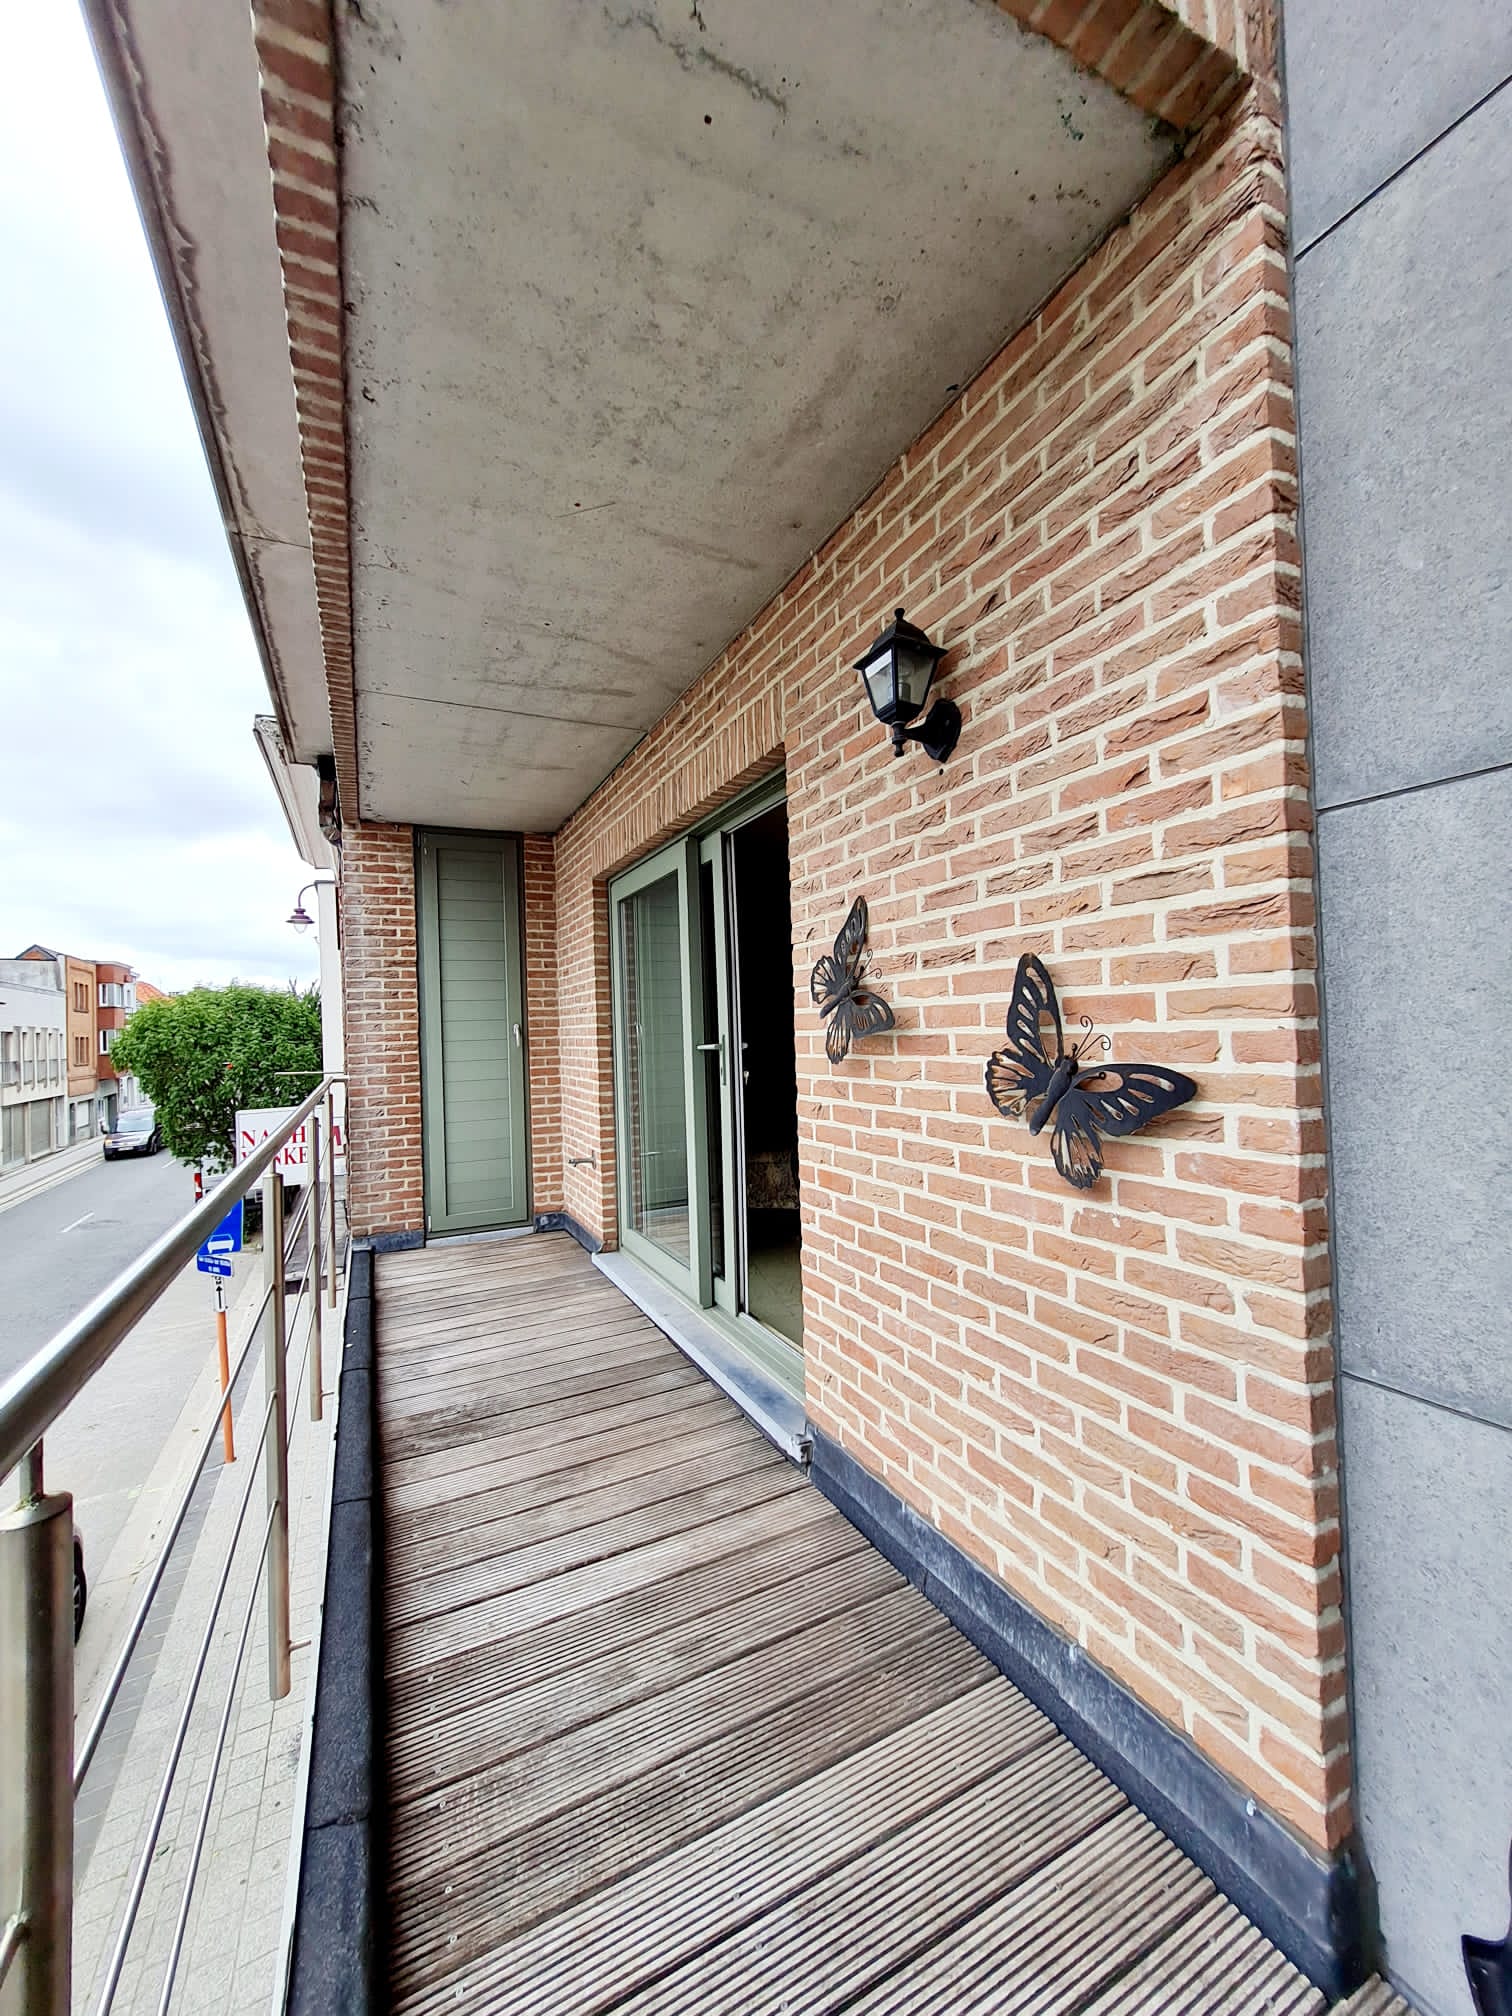 Kieldrecht 16 - Fully equipped flat for rent near Antwerp